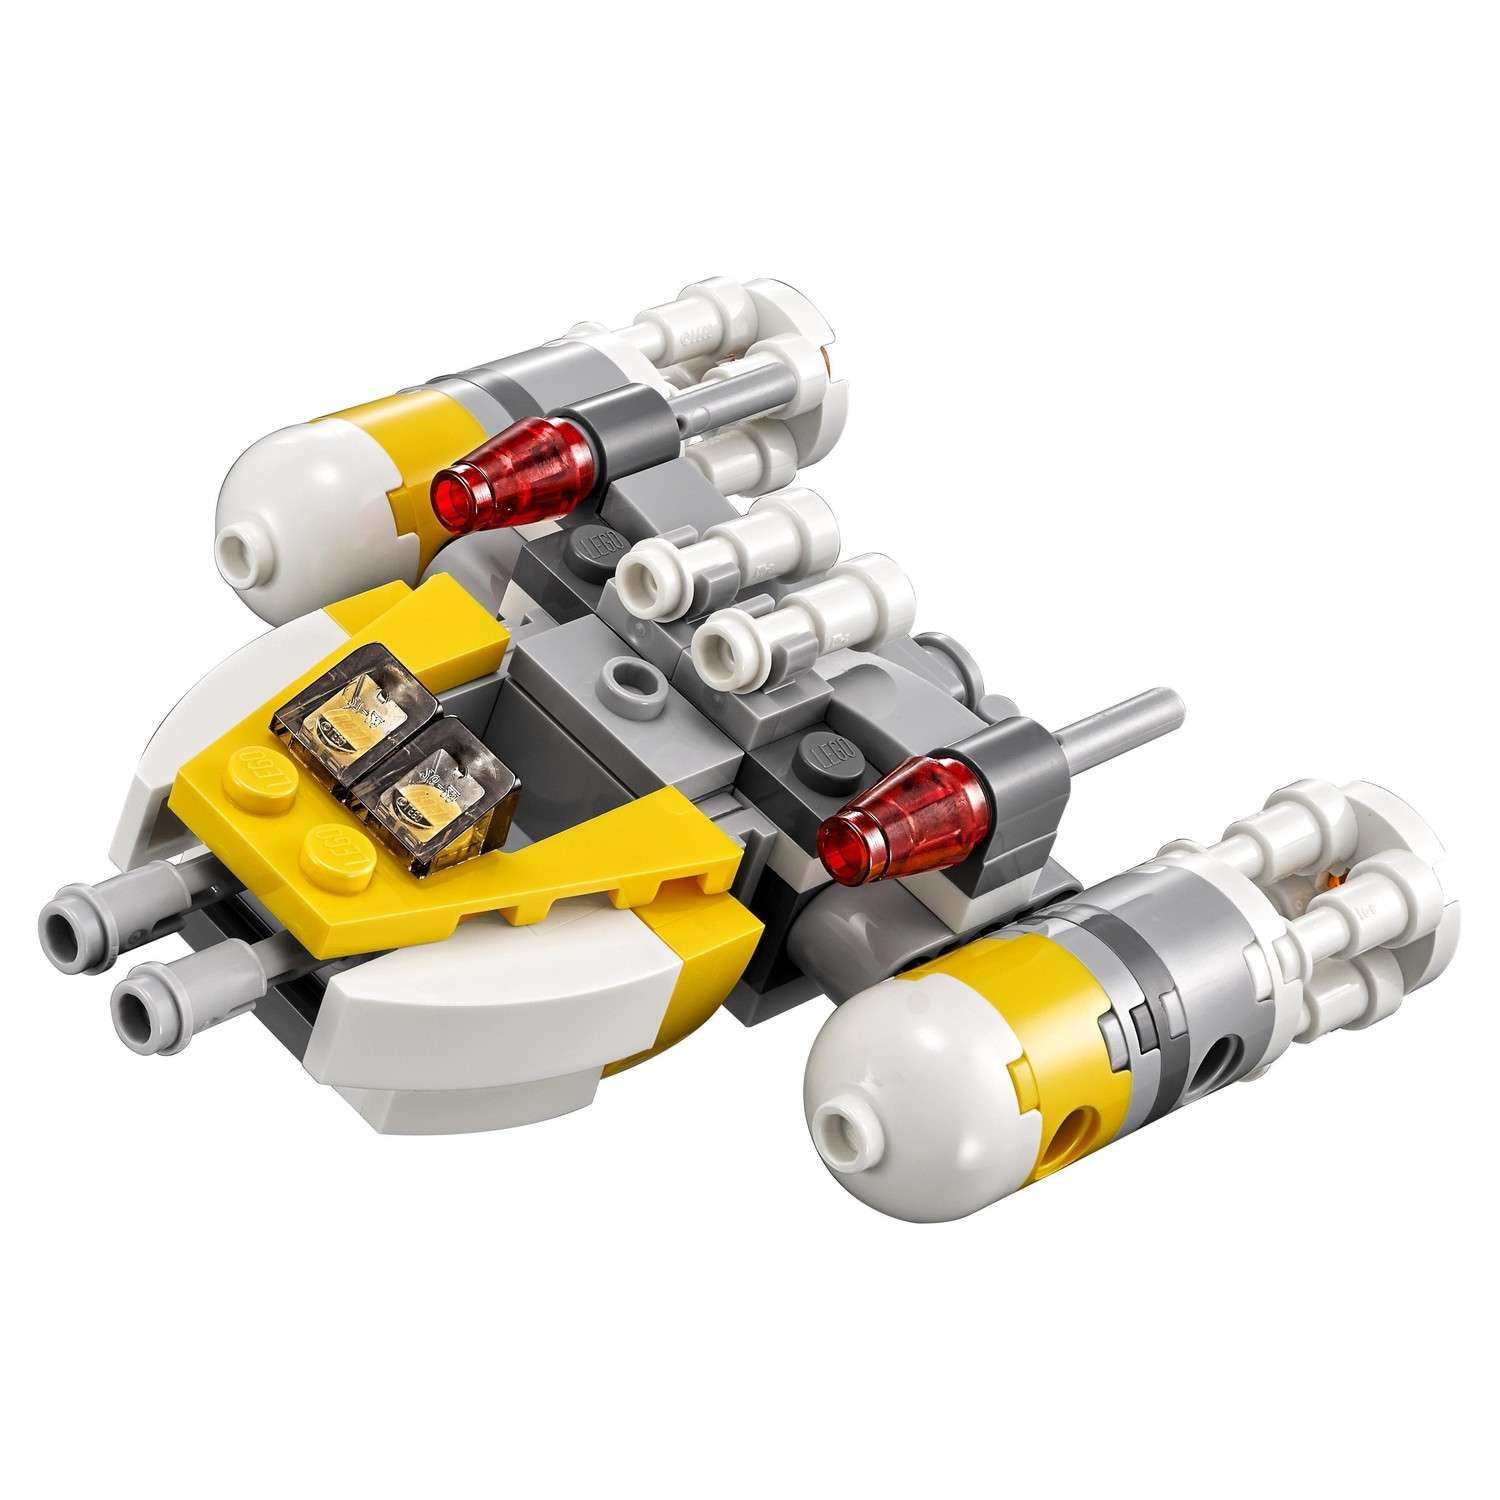 Конструктор LEGO Star Wars TM Микроистребитель типа Y (75162) - фото 6